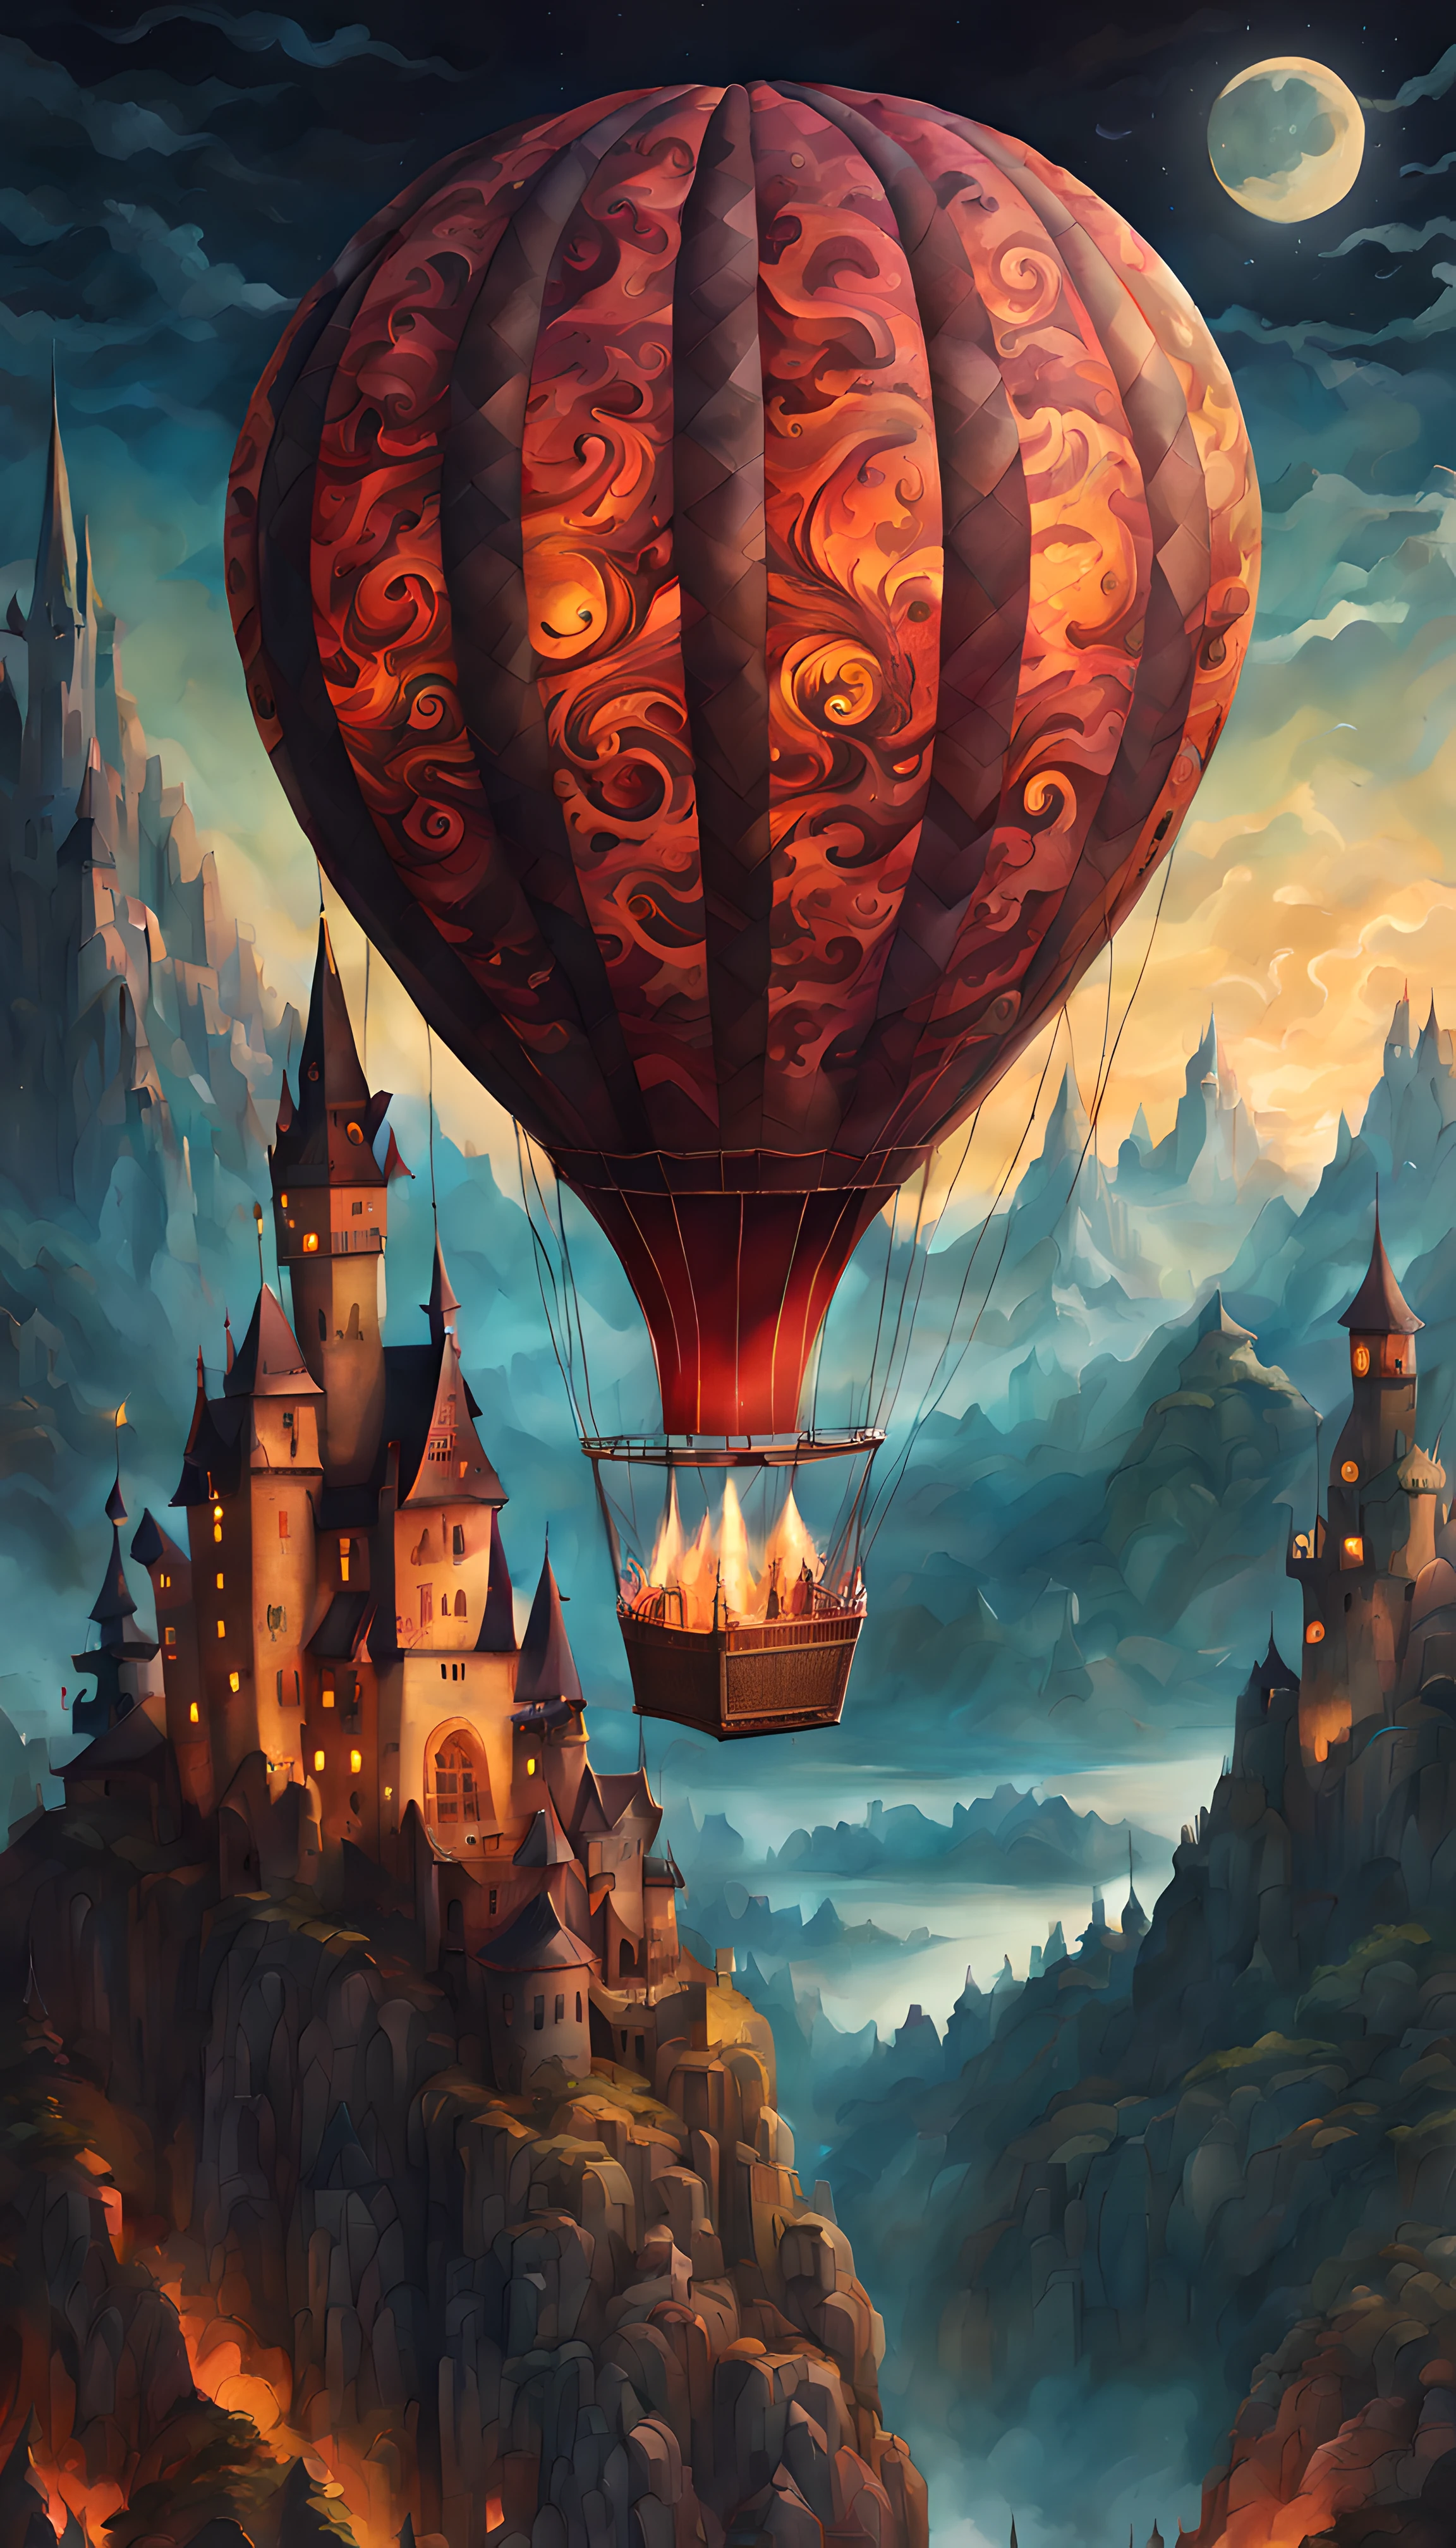 (zeichnung auf papier) eines (Groß) Heißluftballon (mit einem legendären Drachenaufdruck darauf:1.3), romantische magische Ströme, sternenklare Mondnacht, Gotische Burg, Berge, volumetrische Beleuchtung